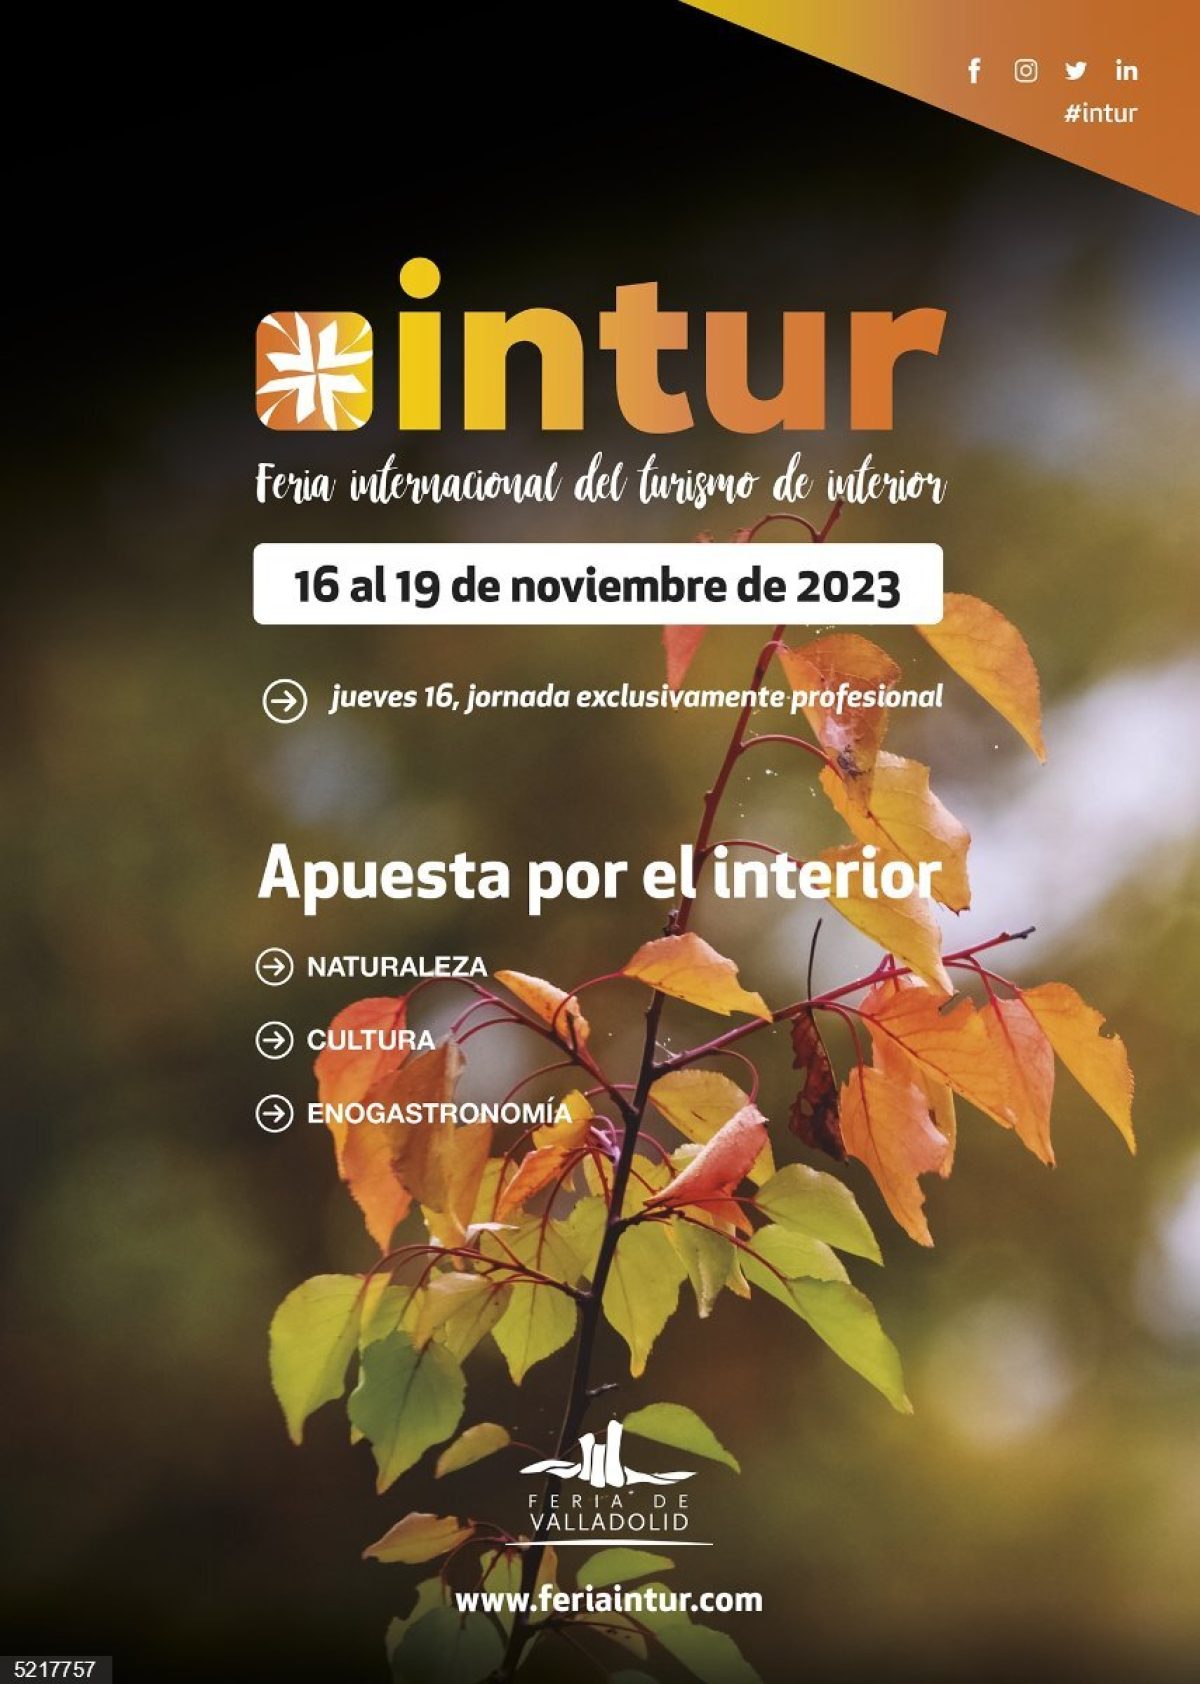 INTUR 2023 – Feria internacional del turismo de interior